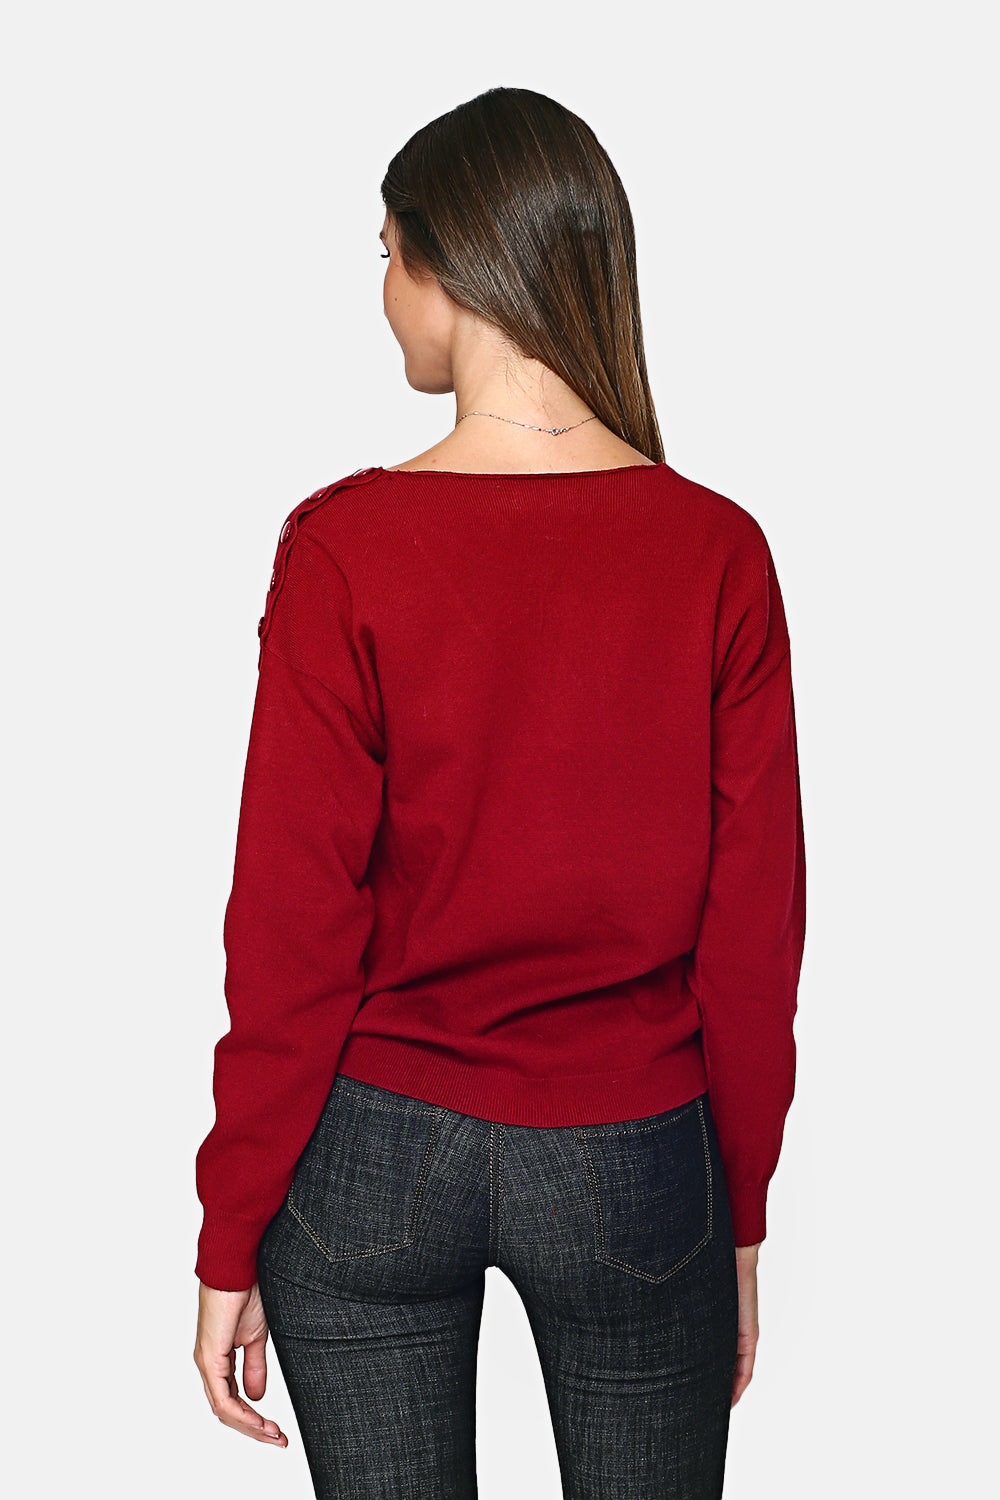 Pullover mit V-Ausschnitt, geschlossen durch eine Knopfleiste an der Schulter und langen Ärmeln